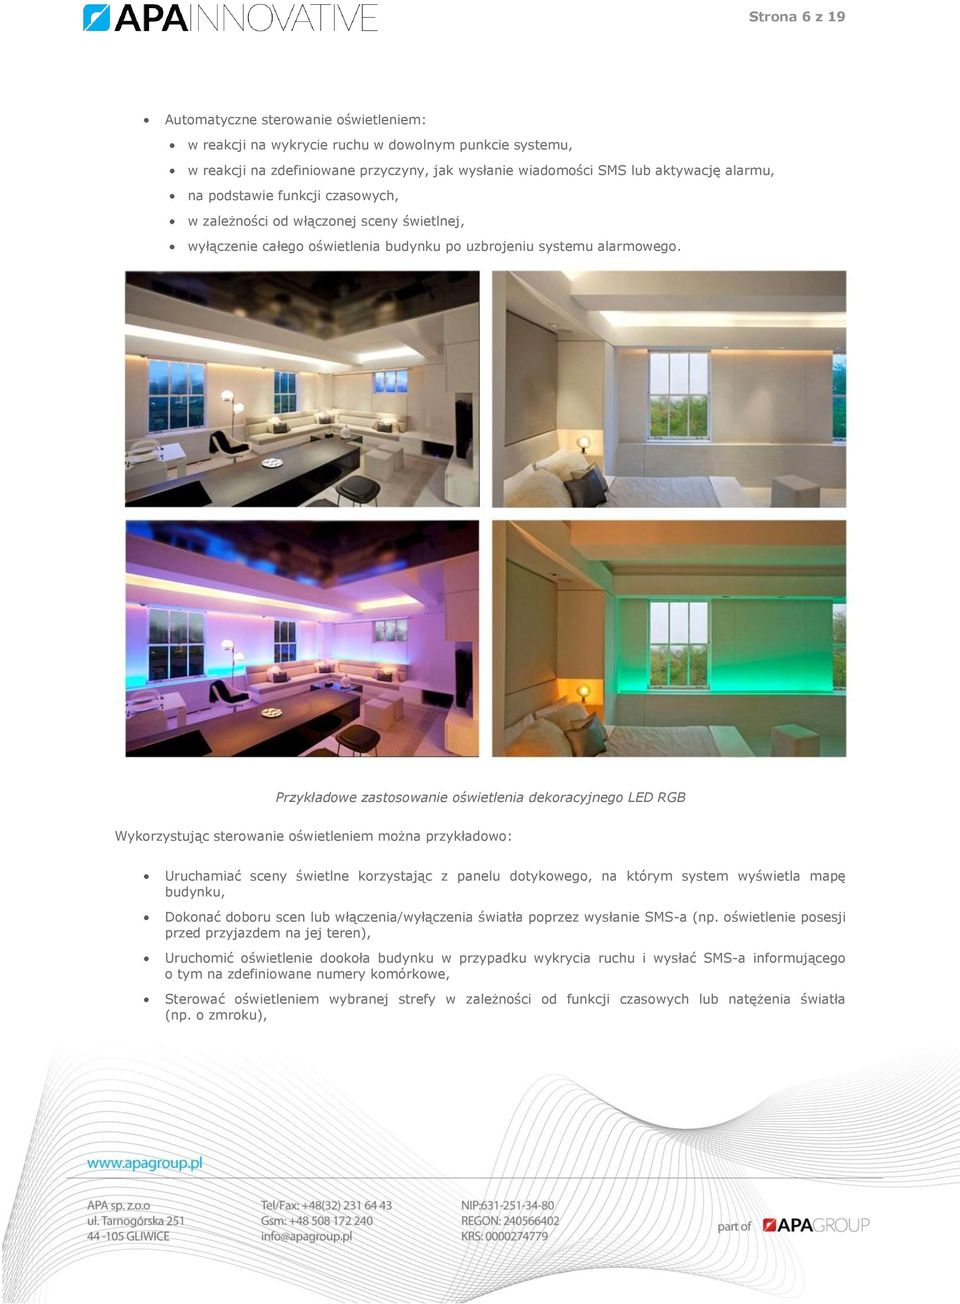 Przykładowe zastosowanie oświetlenia dekoracyjnego LED RGB Wykorzystując sterowanie oświetleniem można przykładowo: Uruchamiać sceny świetlne korzystając z panelu dotykowego, na którym system